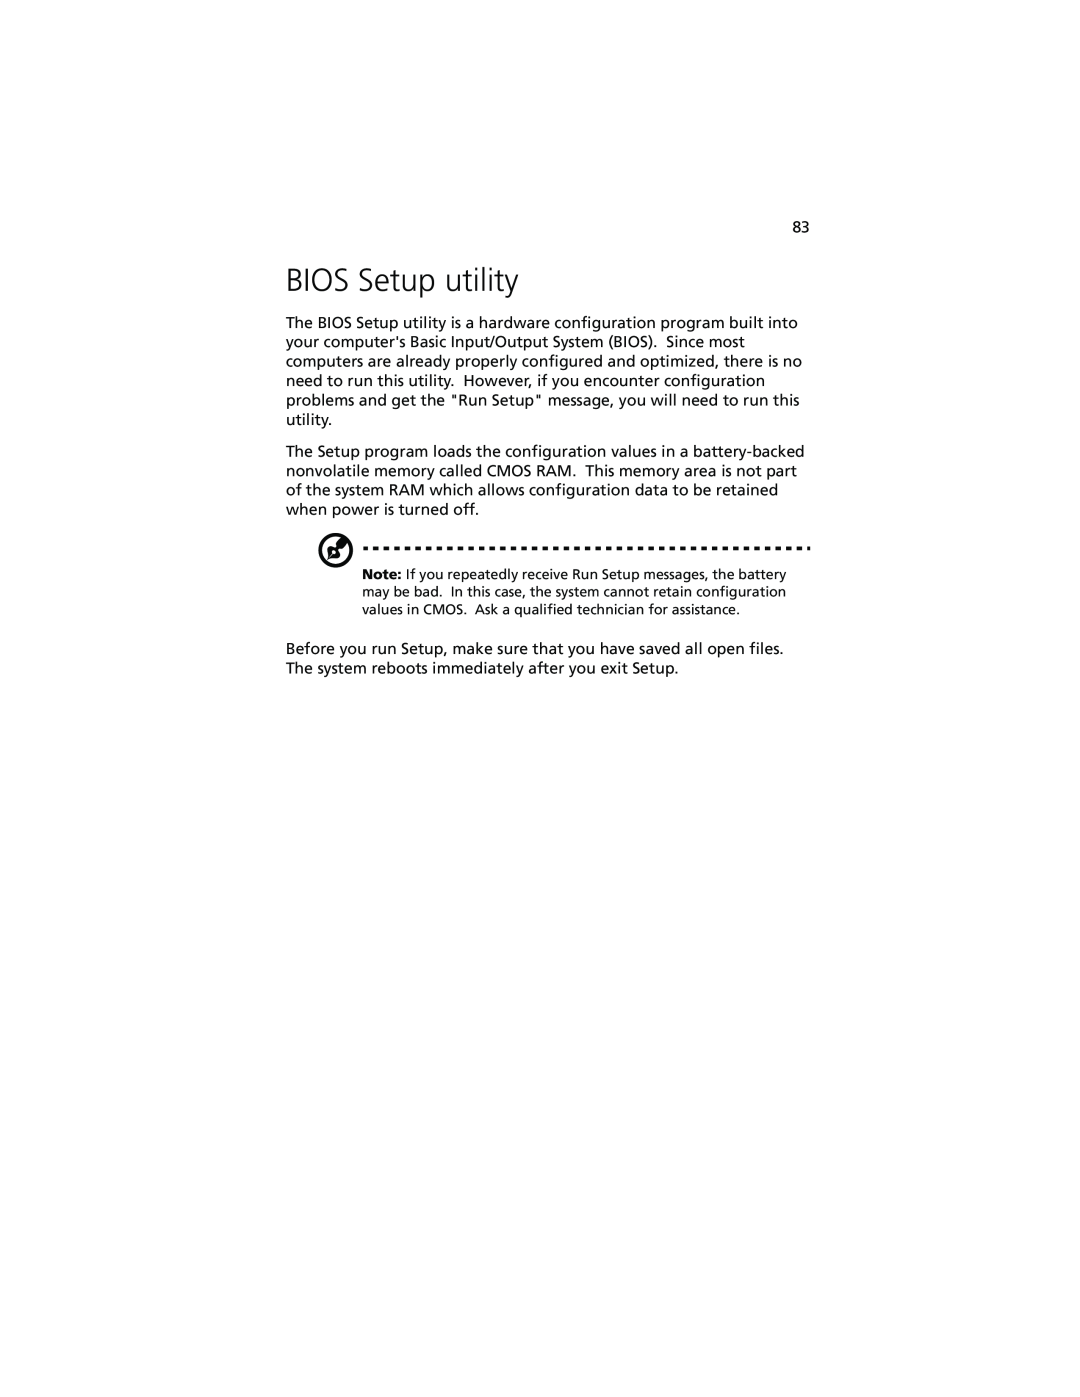 Acer Altos G610 manual BIOS Setup utility 